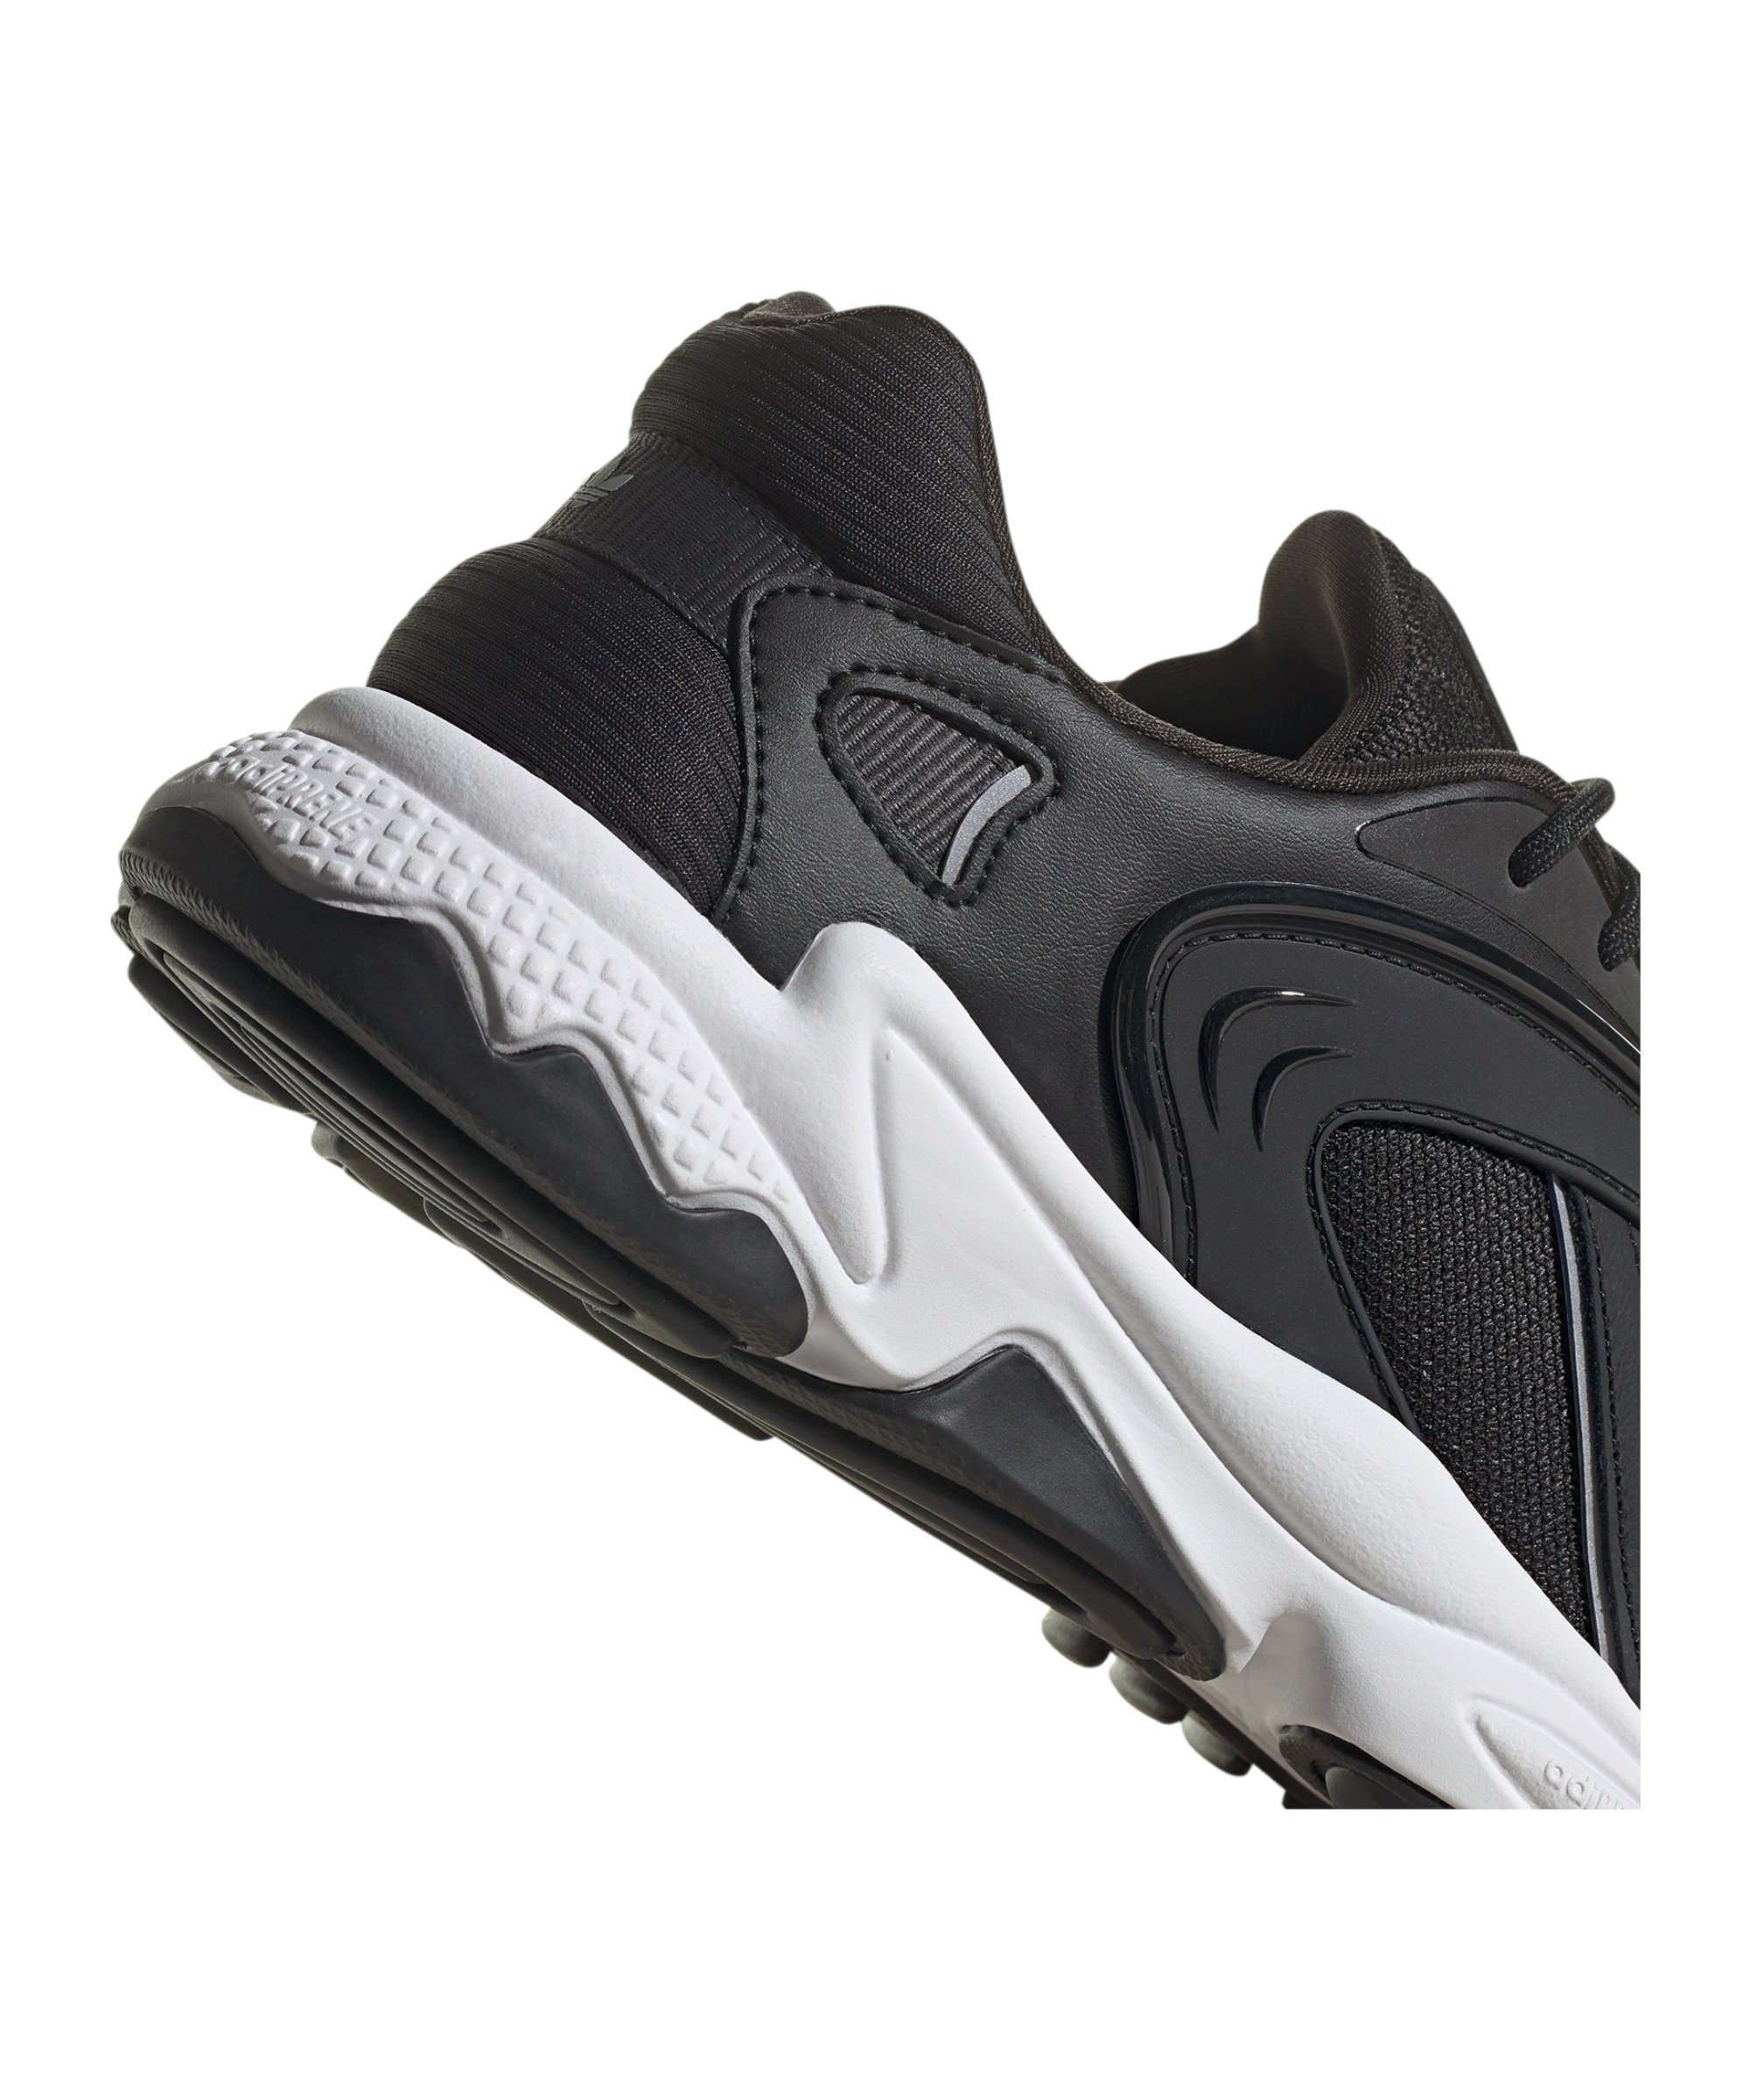 schwarzsilber Oztral Originals adidas Sneaker